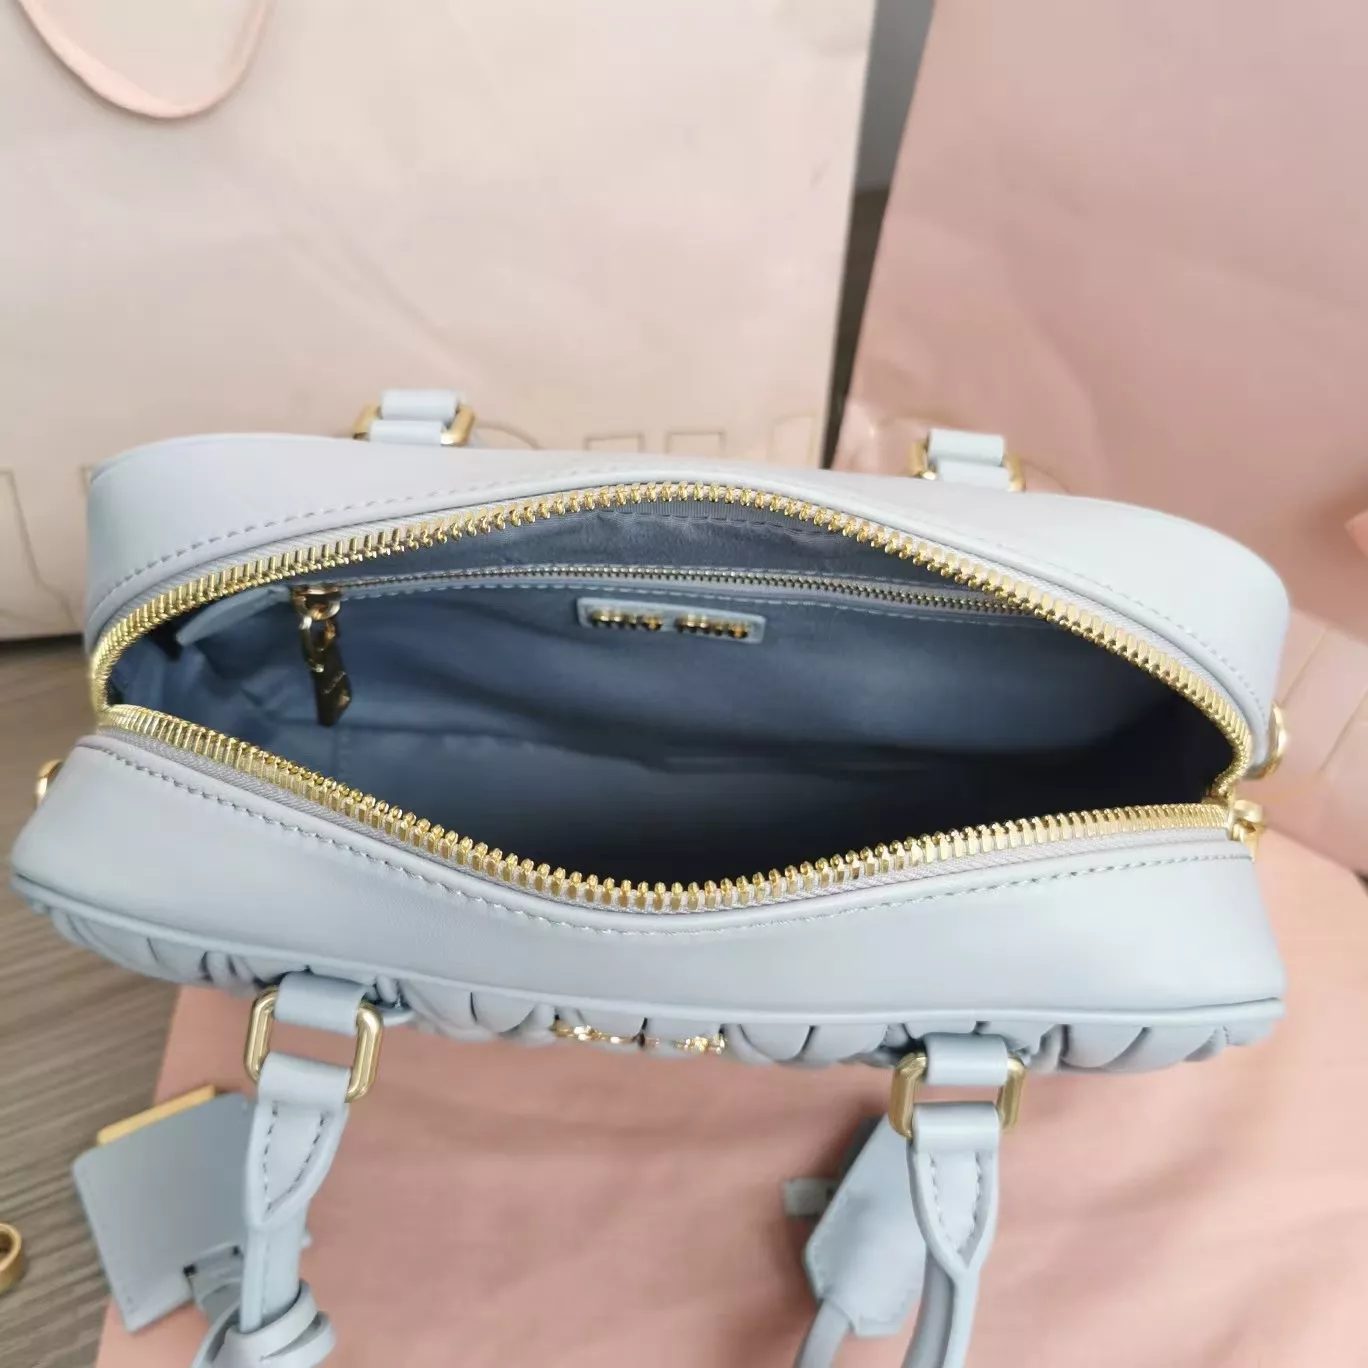 miumiuのバッグは本当にきれいで、この色はとてもきれいです。の画像 (6枚目)